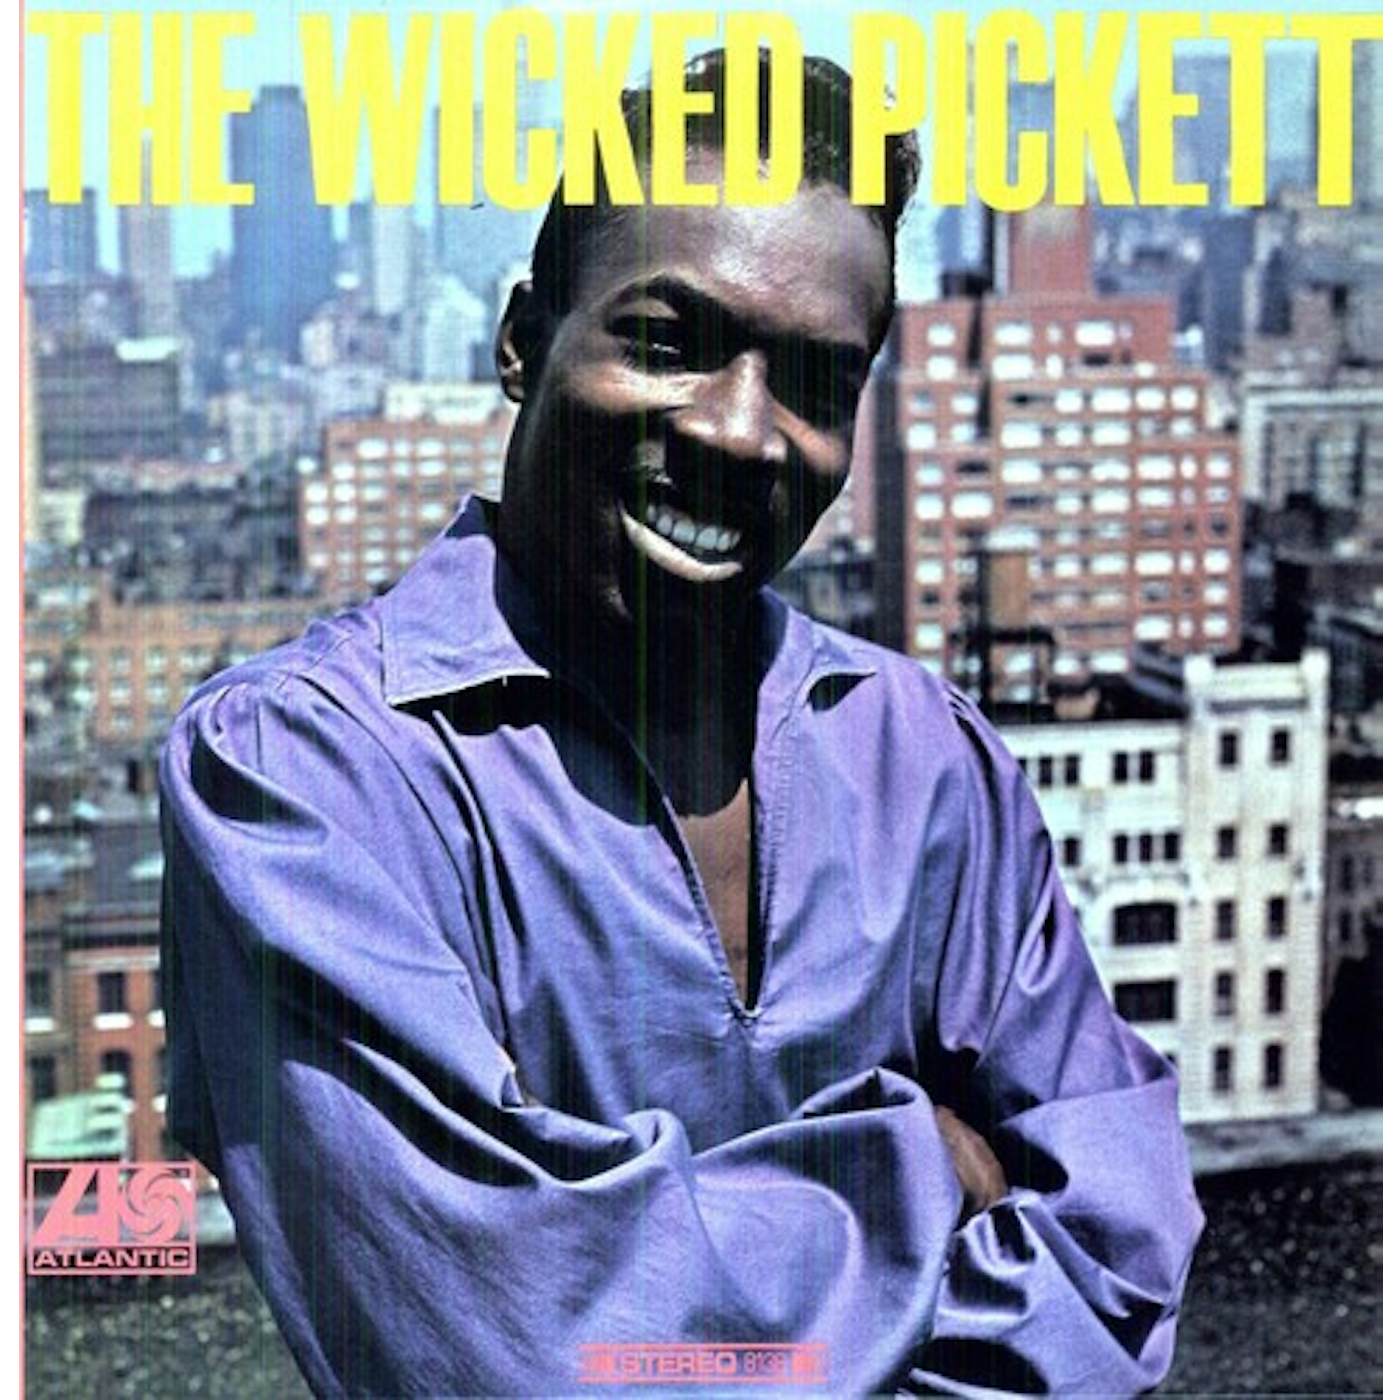 Wilson Pickett WICKED PICKET Vinyl Record